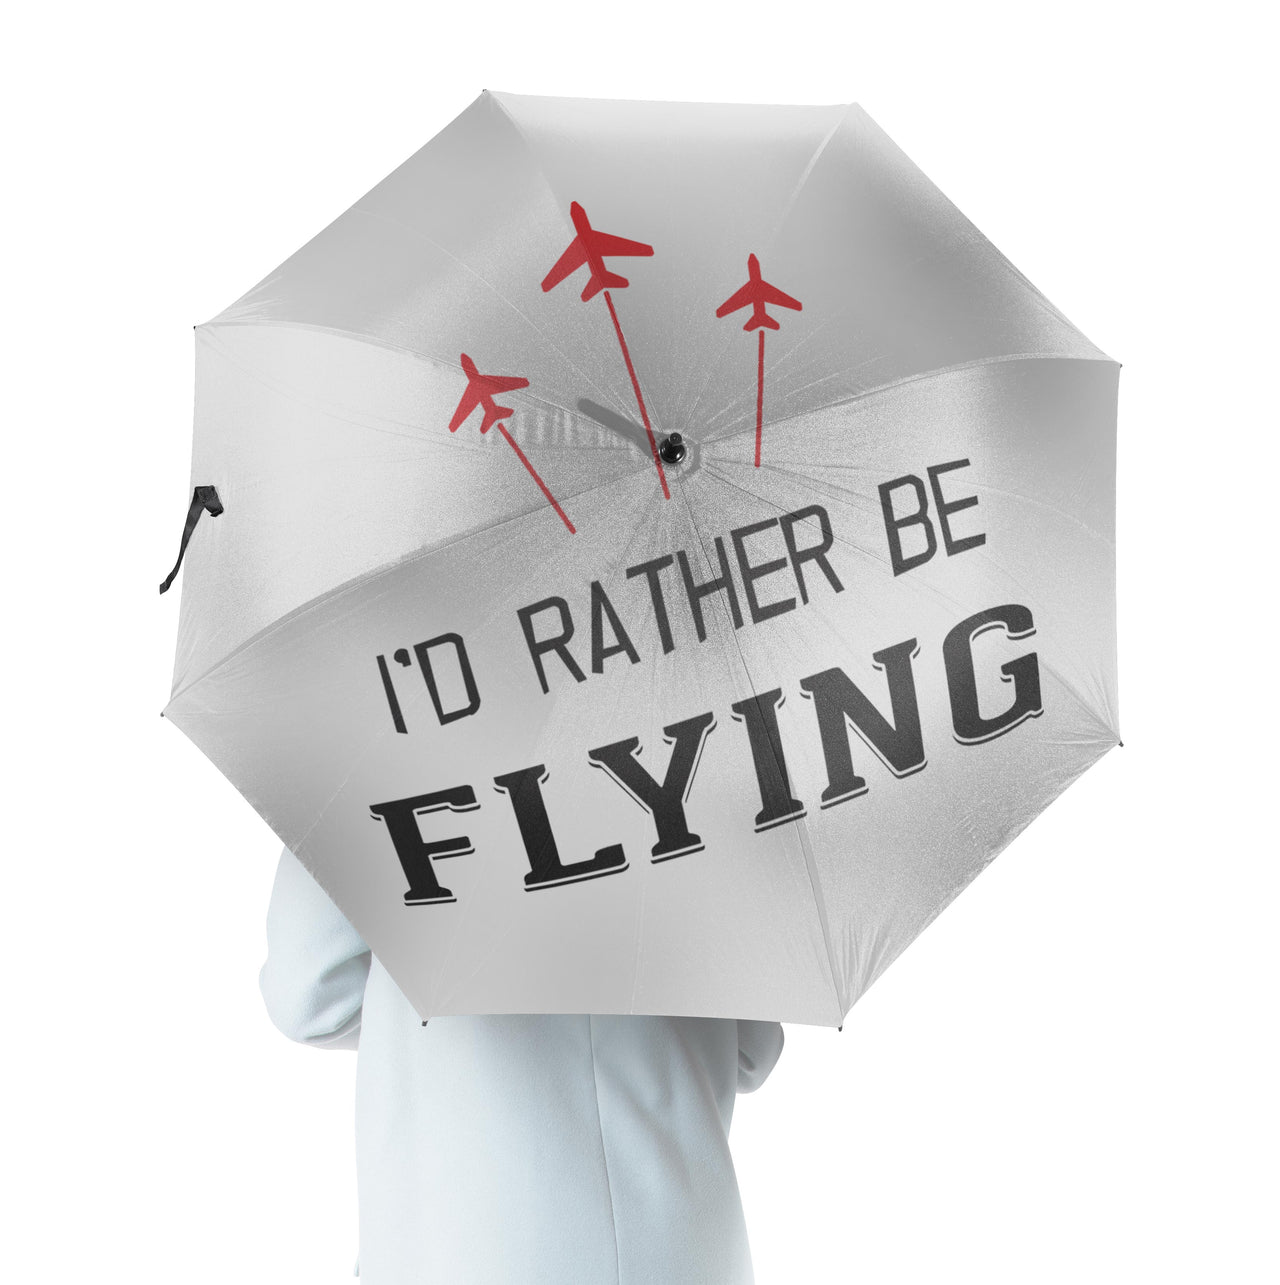 I'D Rather Be Flying Designed Umbrella